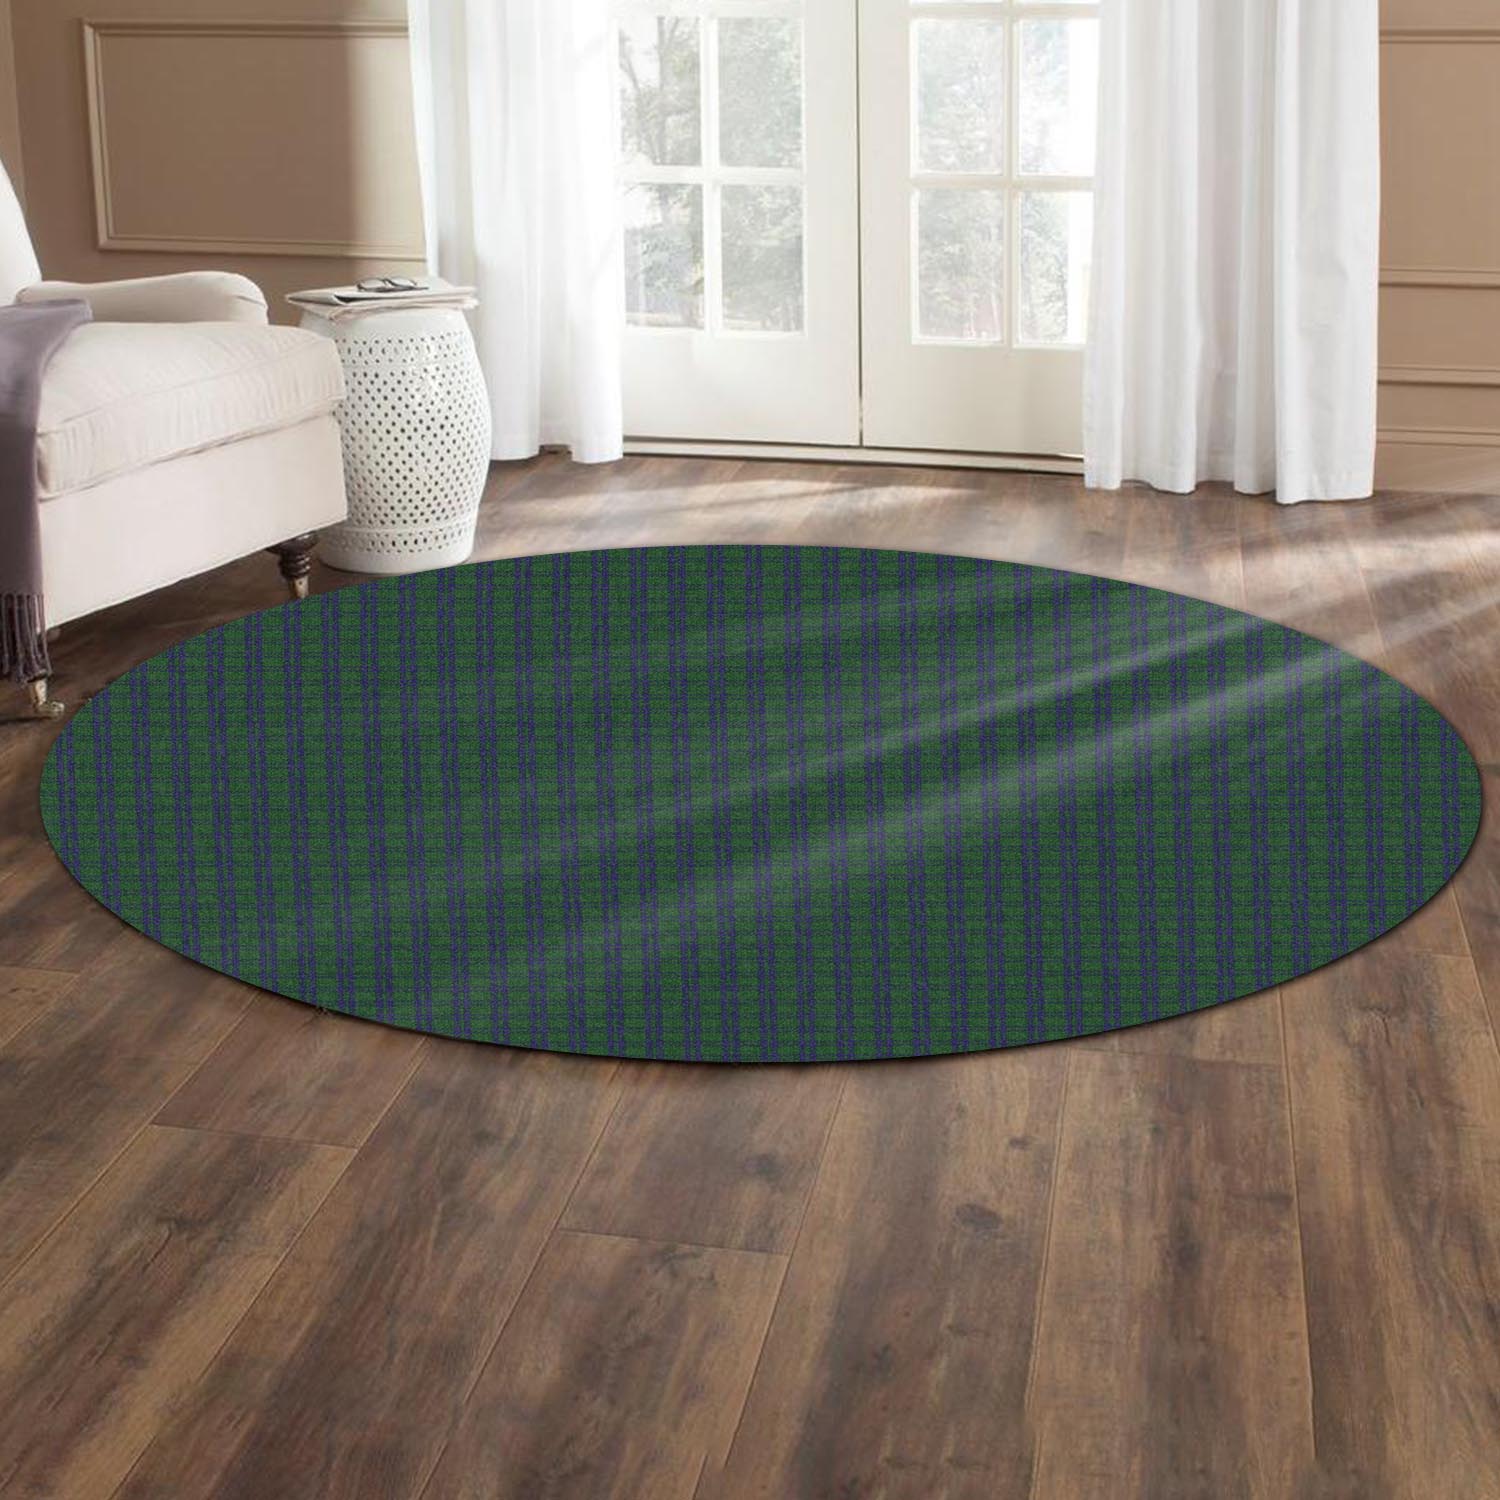 montgomery-tartan-round-rug